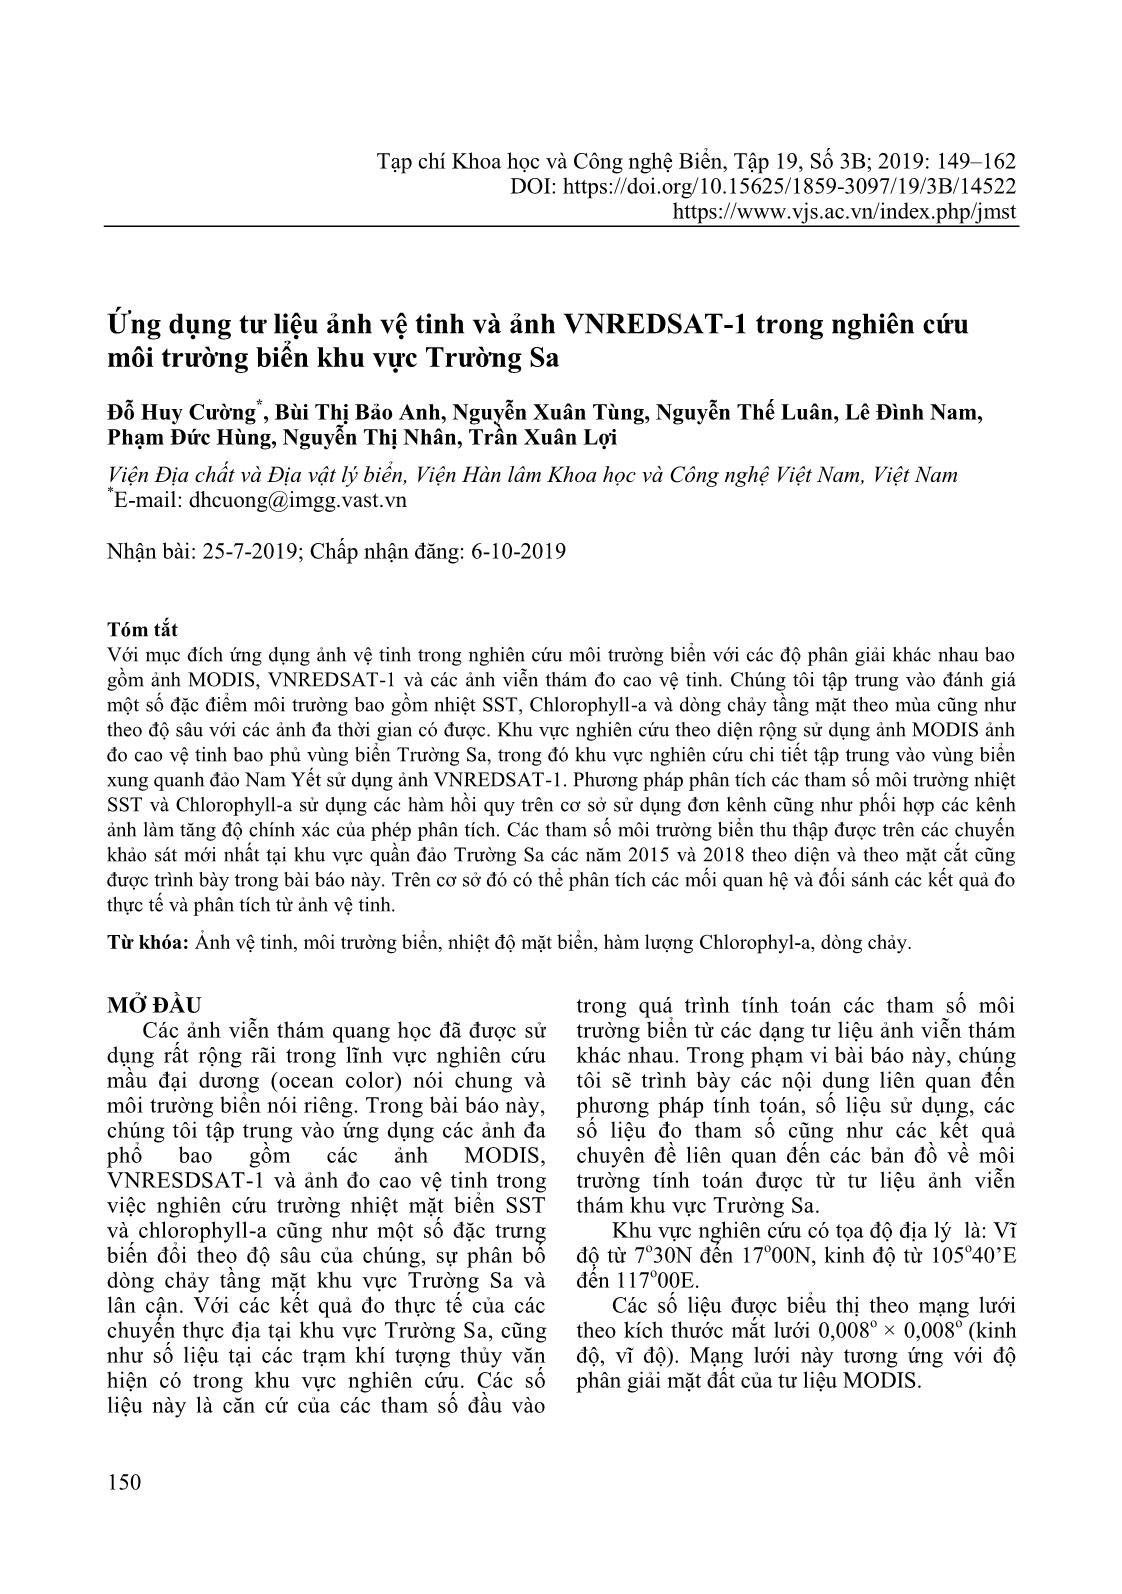 Ứng dụng tư liệu ảnh vệ tinh và ảnh VNREDSAT-1 trong nghiên cứu môi trường biển khu vực Trường Sa trang 2